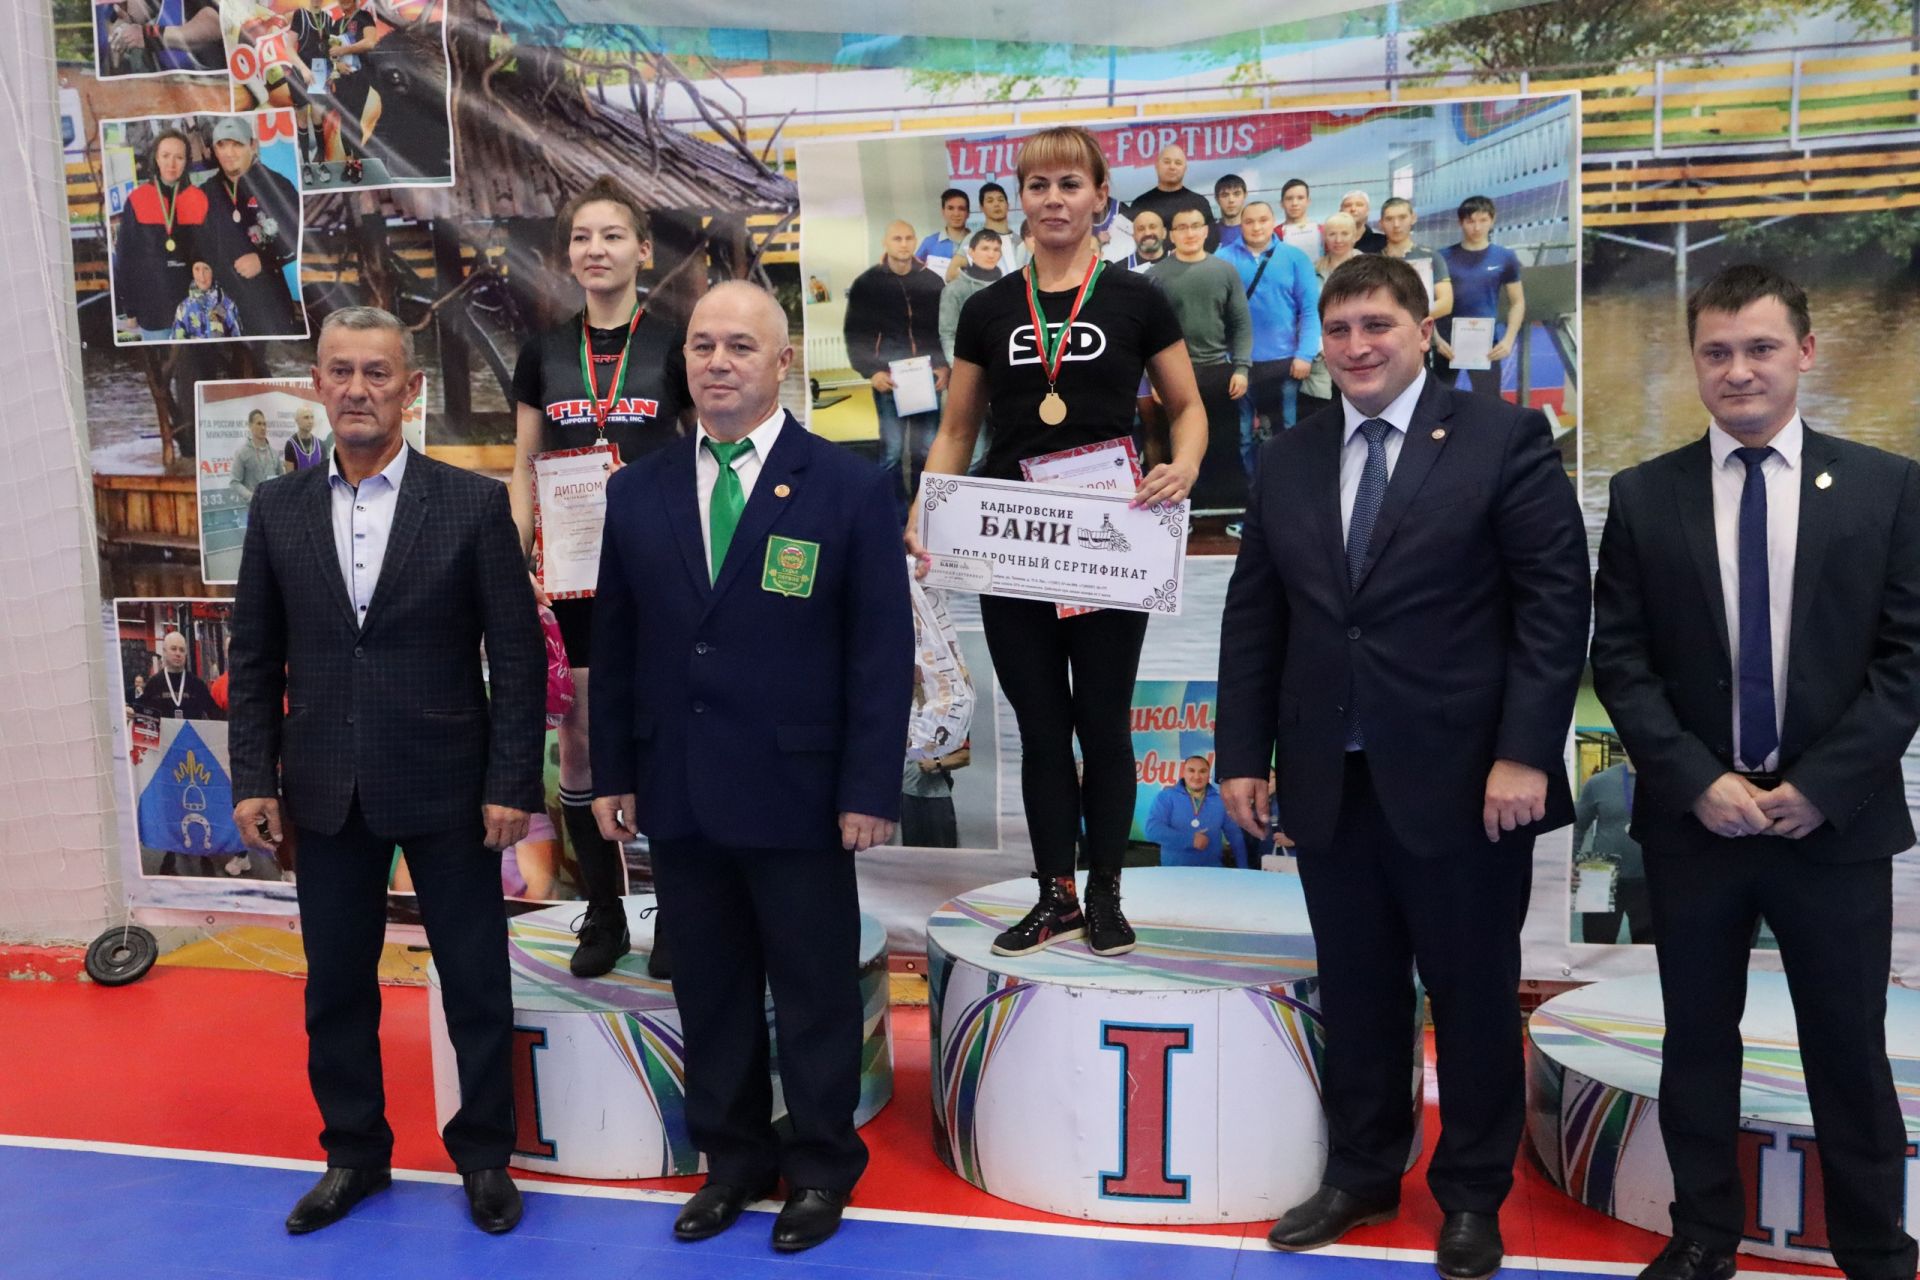 В Менделеевске наградили участниц лично-командного Чемпионата РТ по пауэрлифтингу